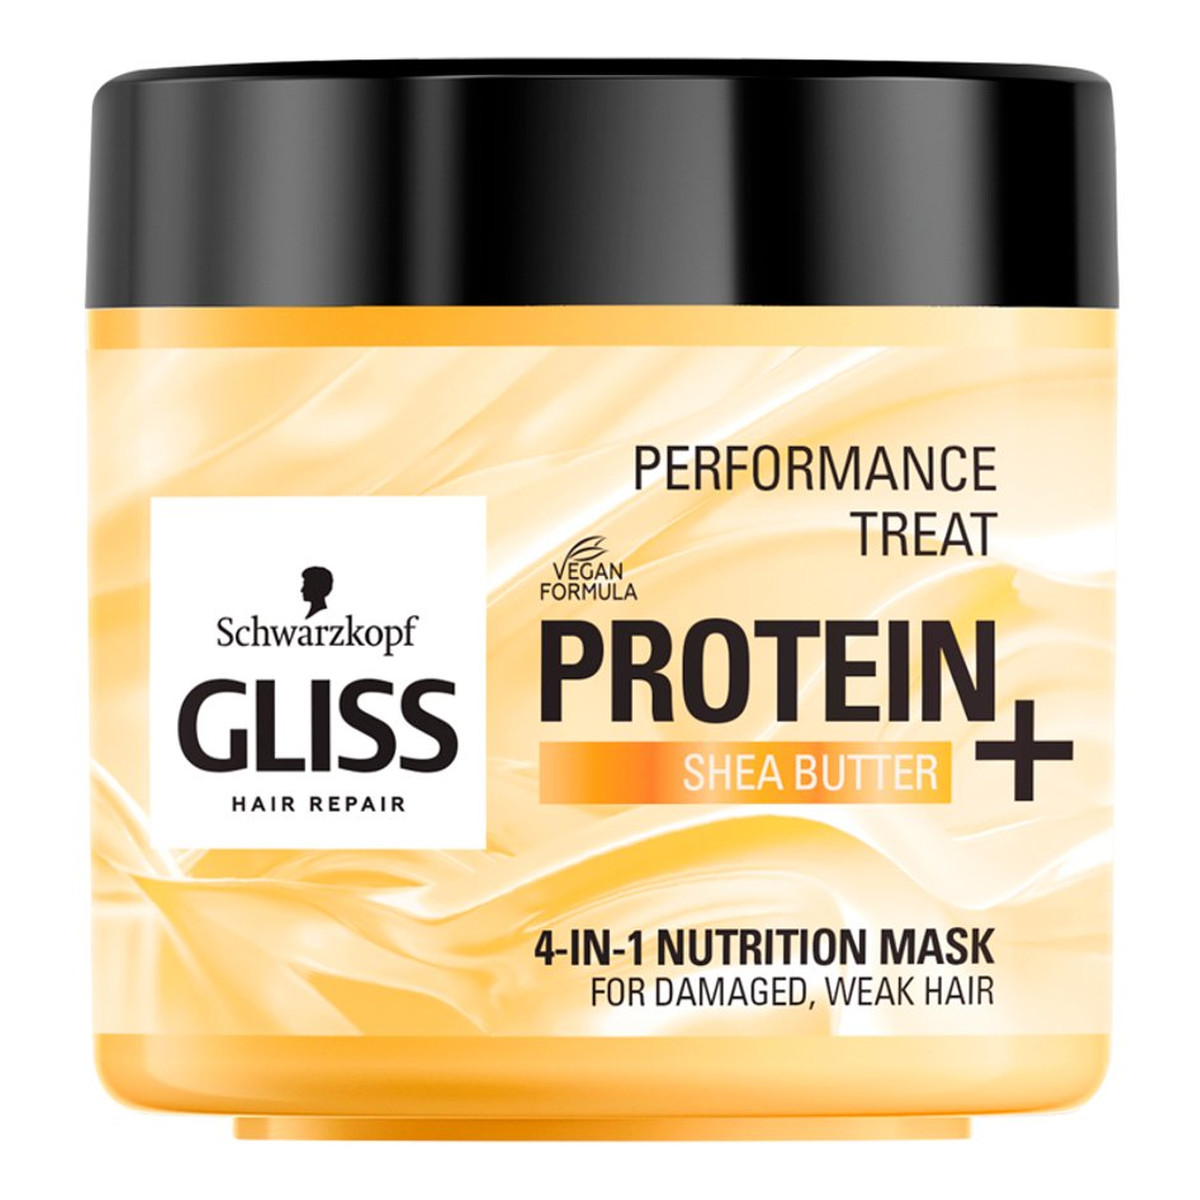 Gliss Performance Treat 4-in-1 maska odżywcza do włosów Protein + Shea Butter 400ml